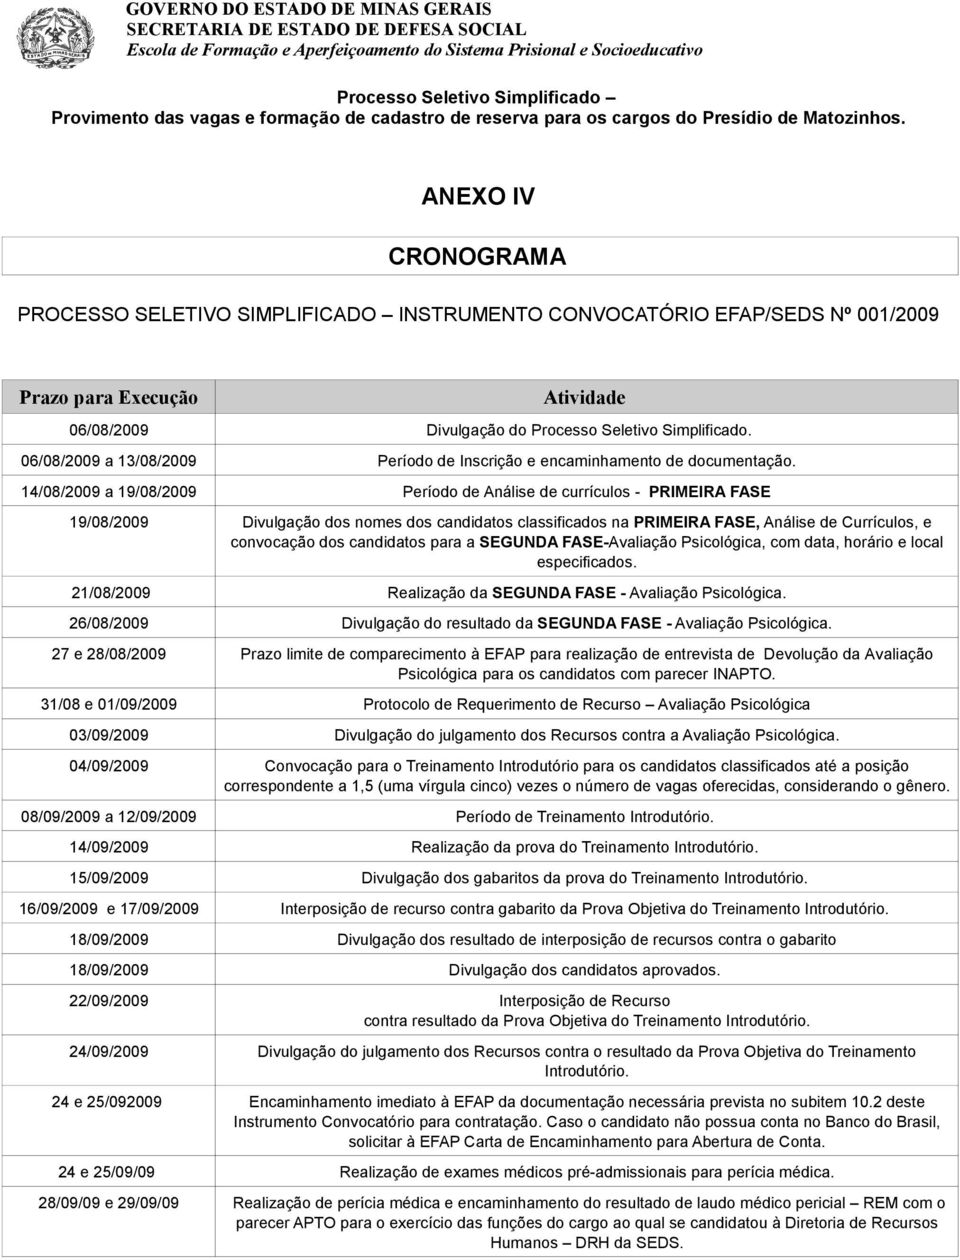 candidatos para a SEGUNDA FASE-Avaliação Psicológica, com data, horário e local especificados. 21/08/2009 Realização da SEGUNDA FASE - Avaliação Psicológica.